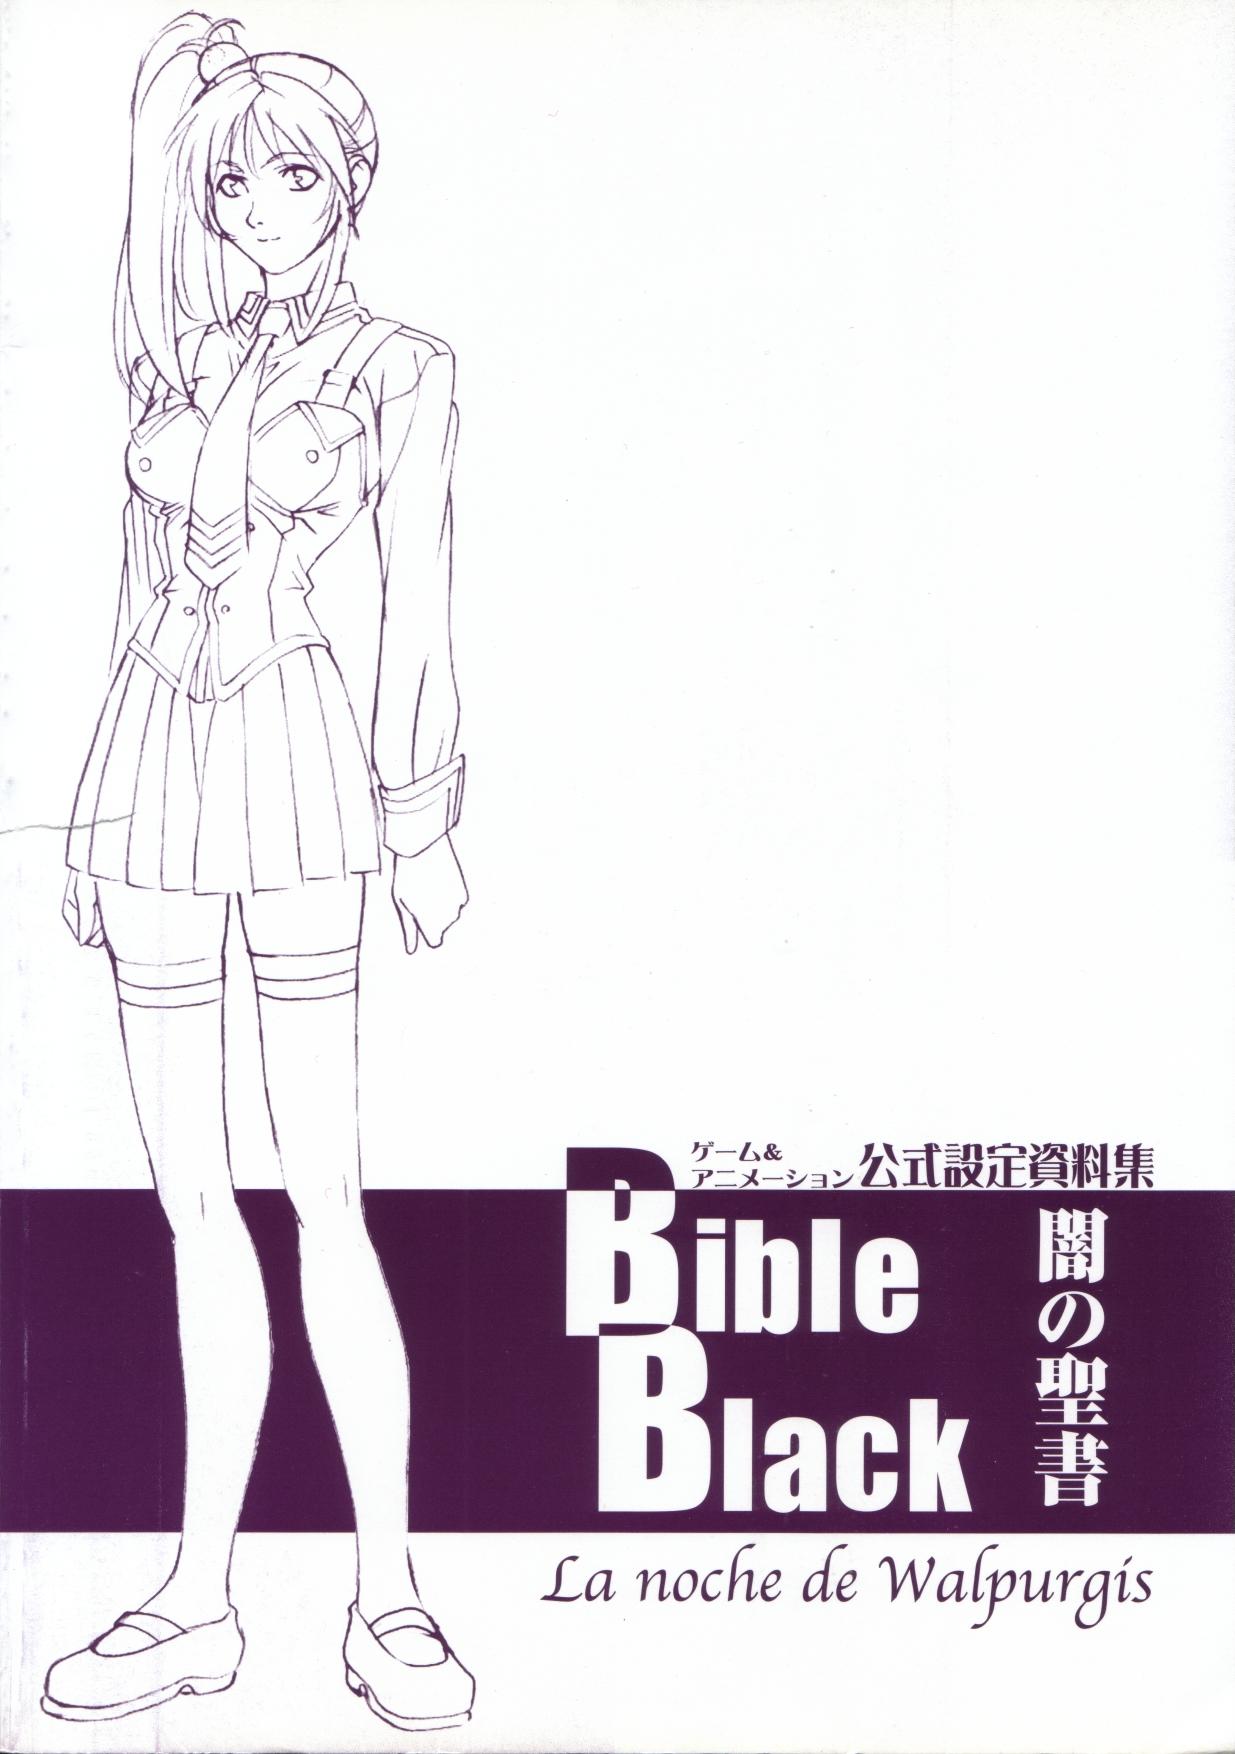 Bible Black バイブルブラック ゲーム&アニメーション公式設定資料集 9